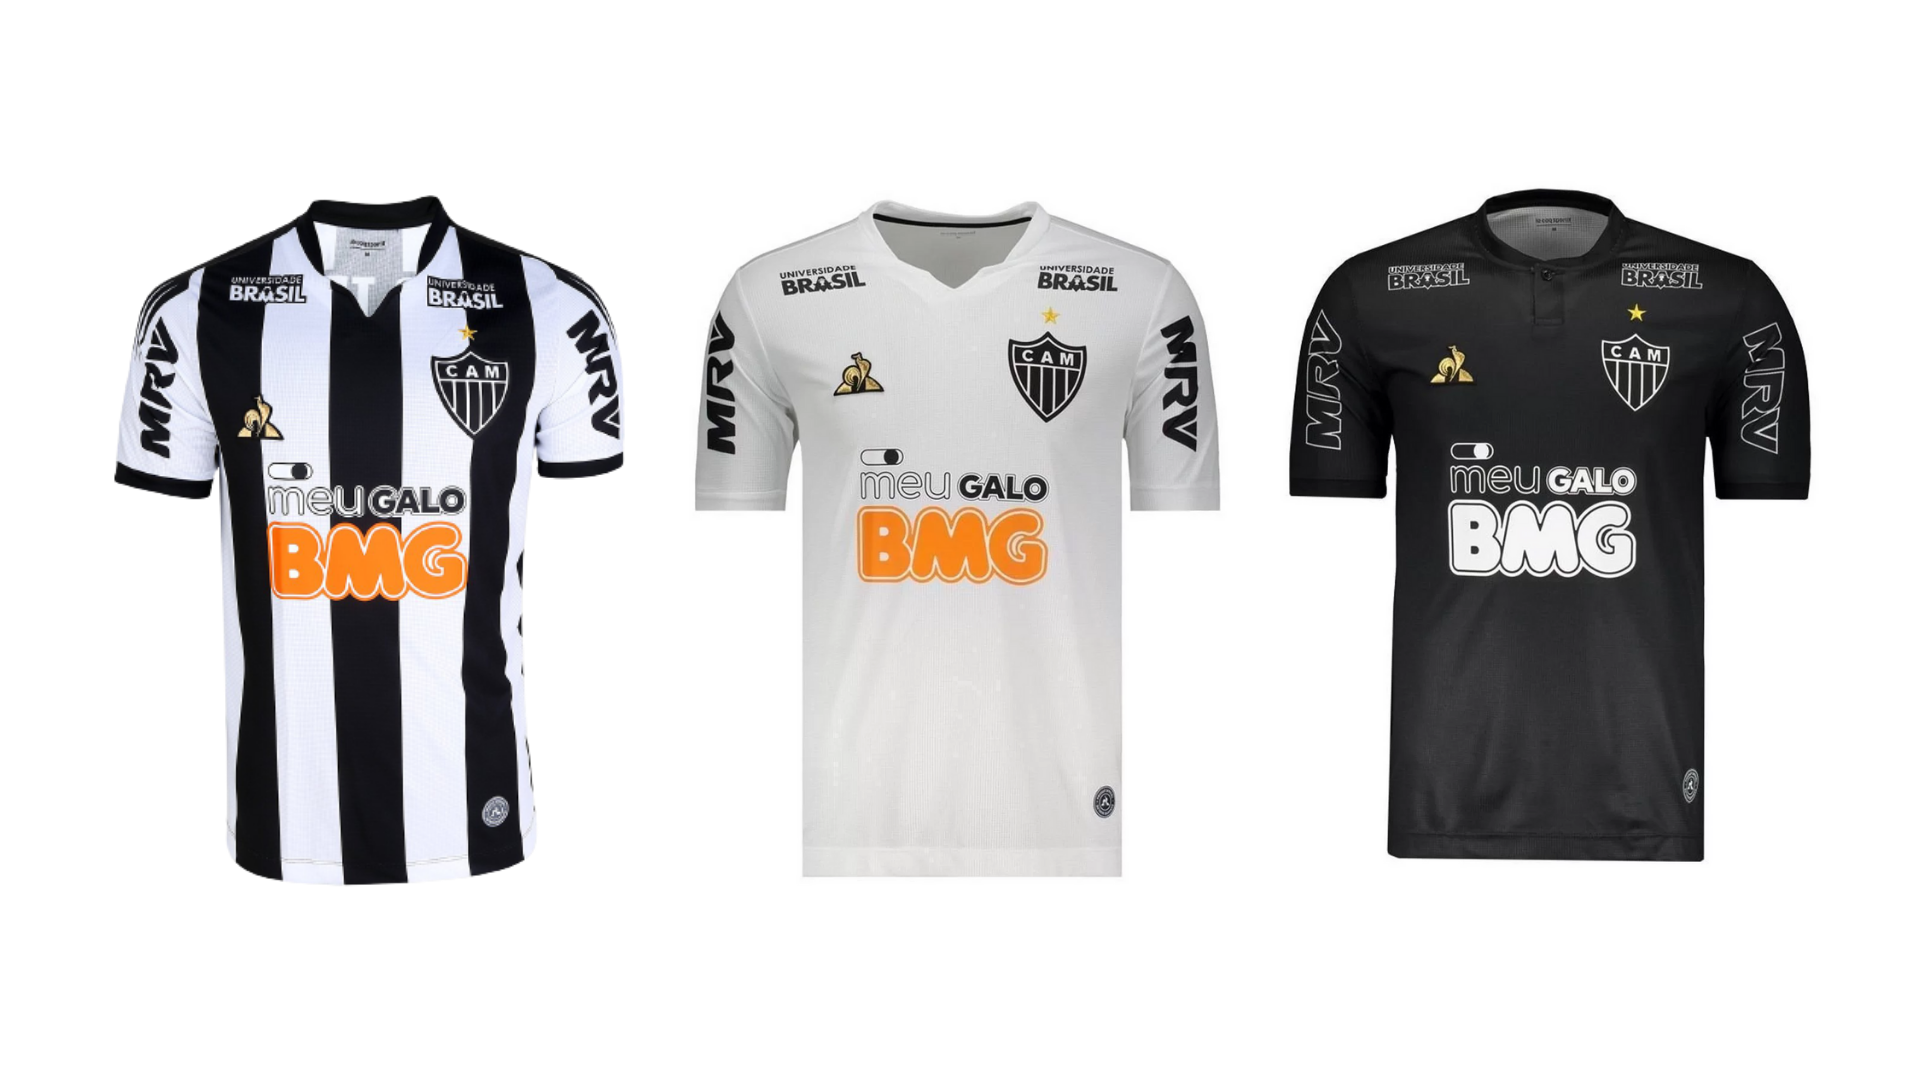 Definidas camisas do jogo contra a Caldense que serão leiloadas – Clube  Atlético Mineiro